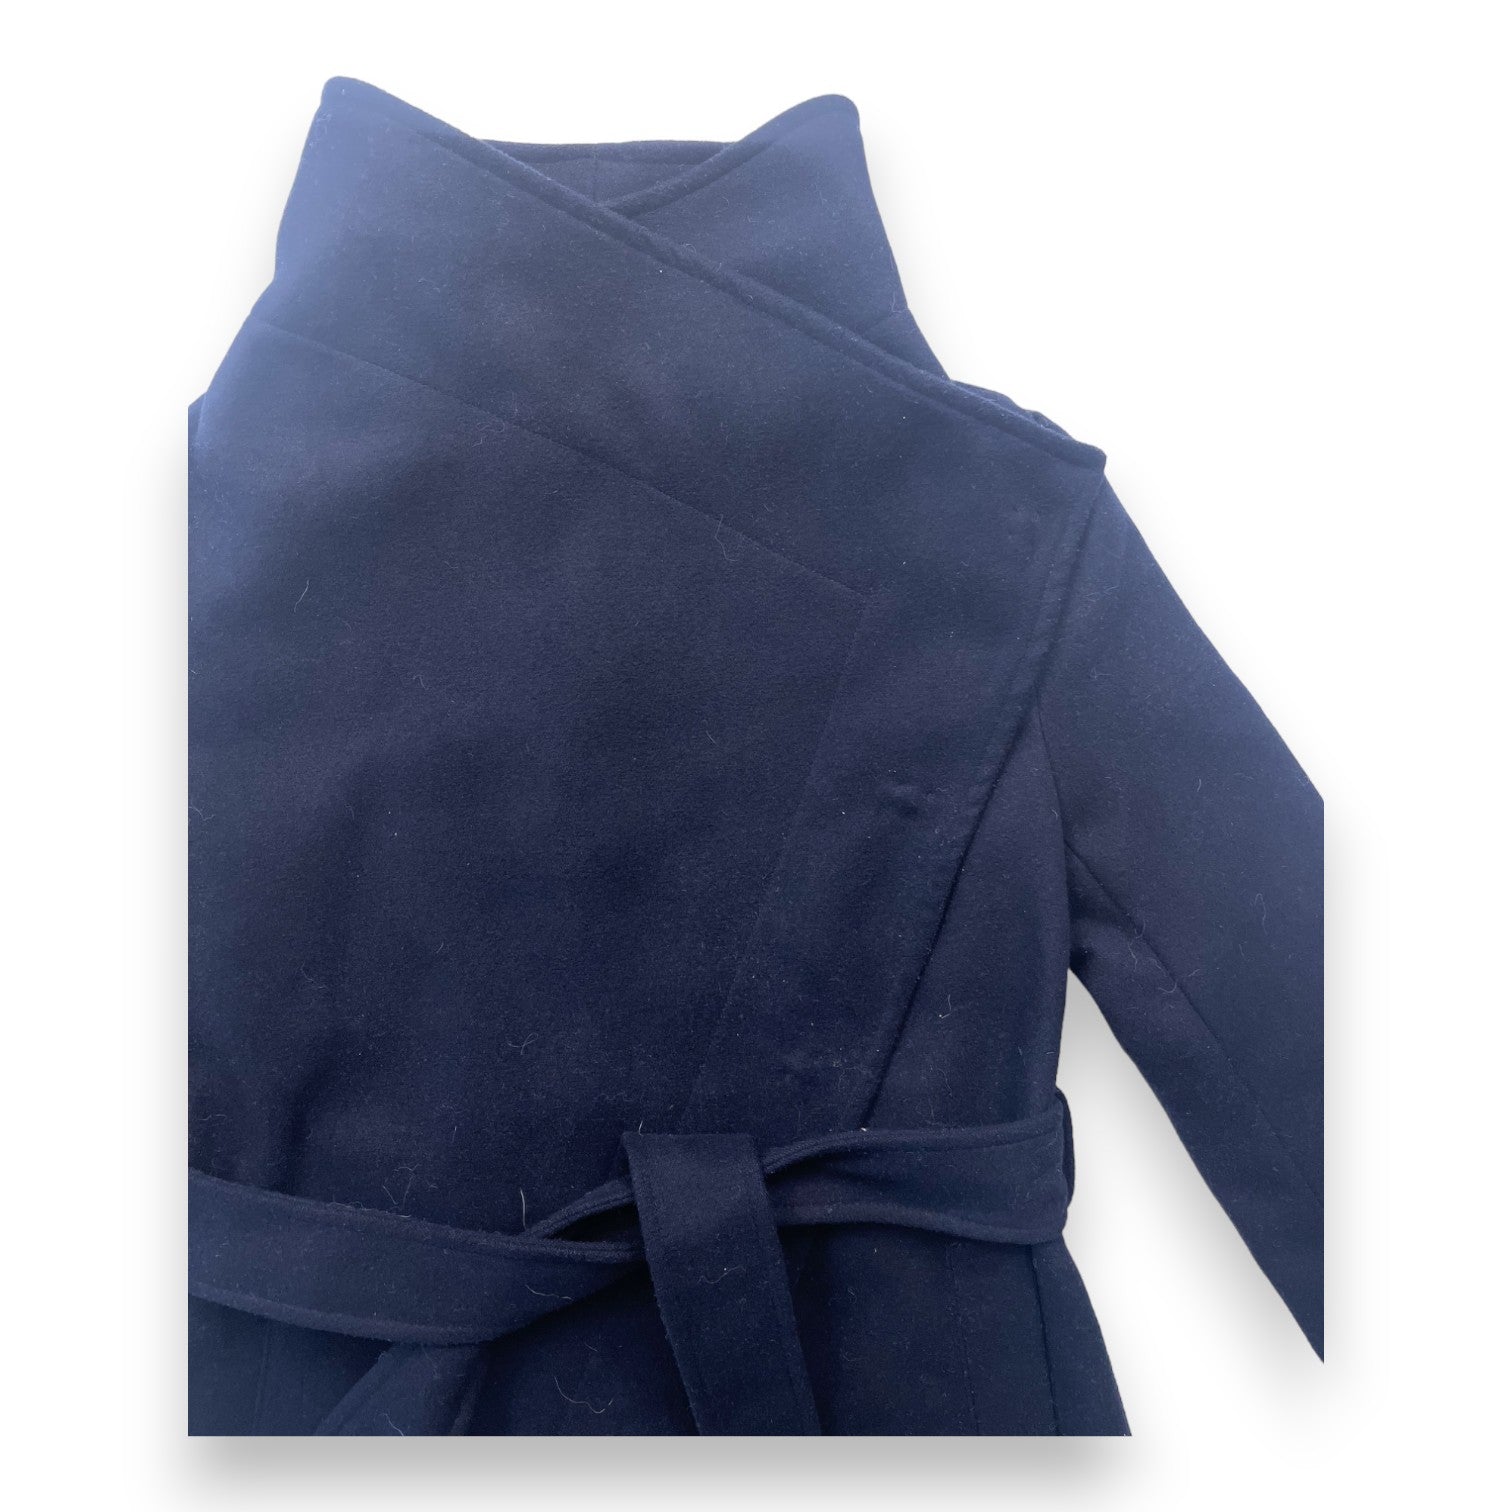 DKNY - Manteau bleu marine - 8 ans